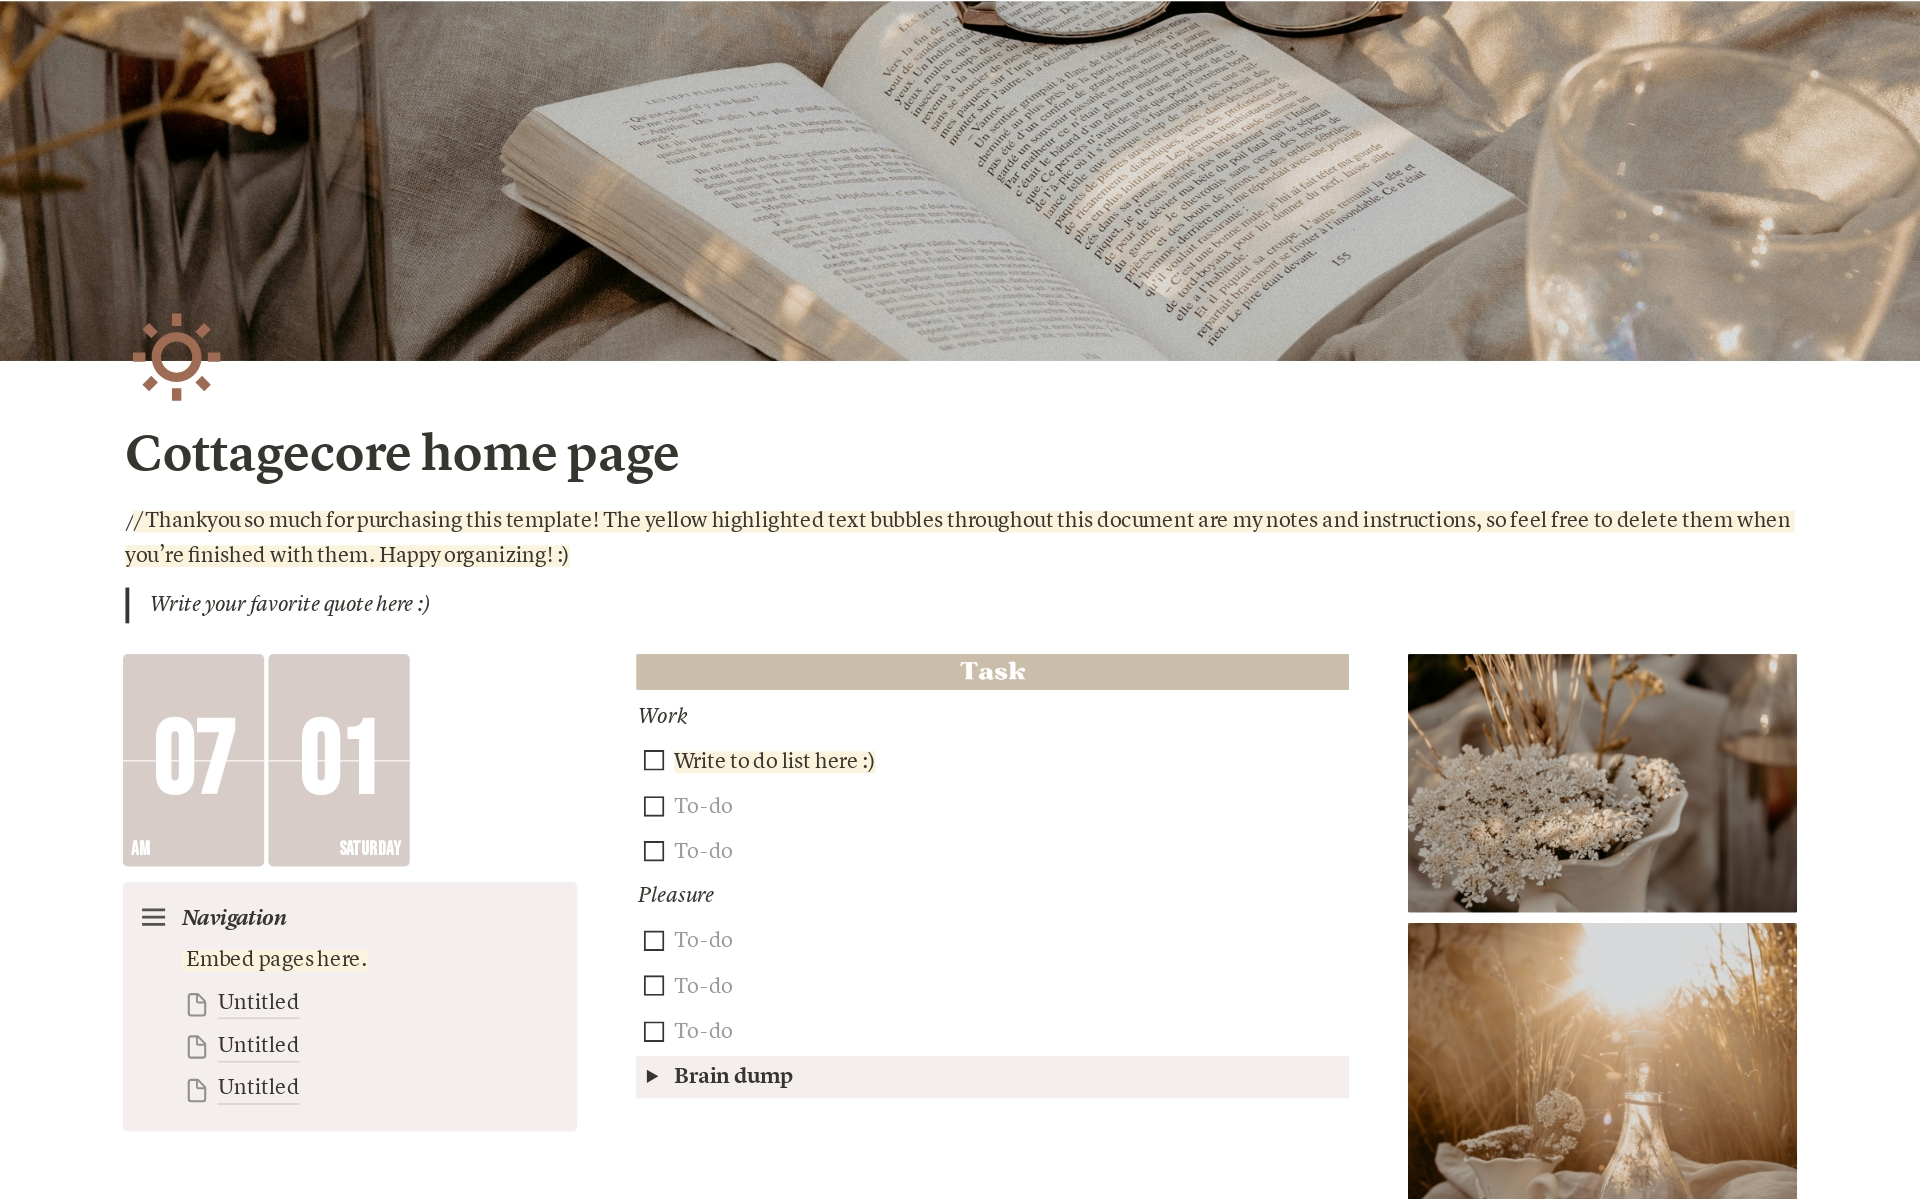 Vista previa de una plantilla para Cottagecore home page